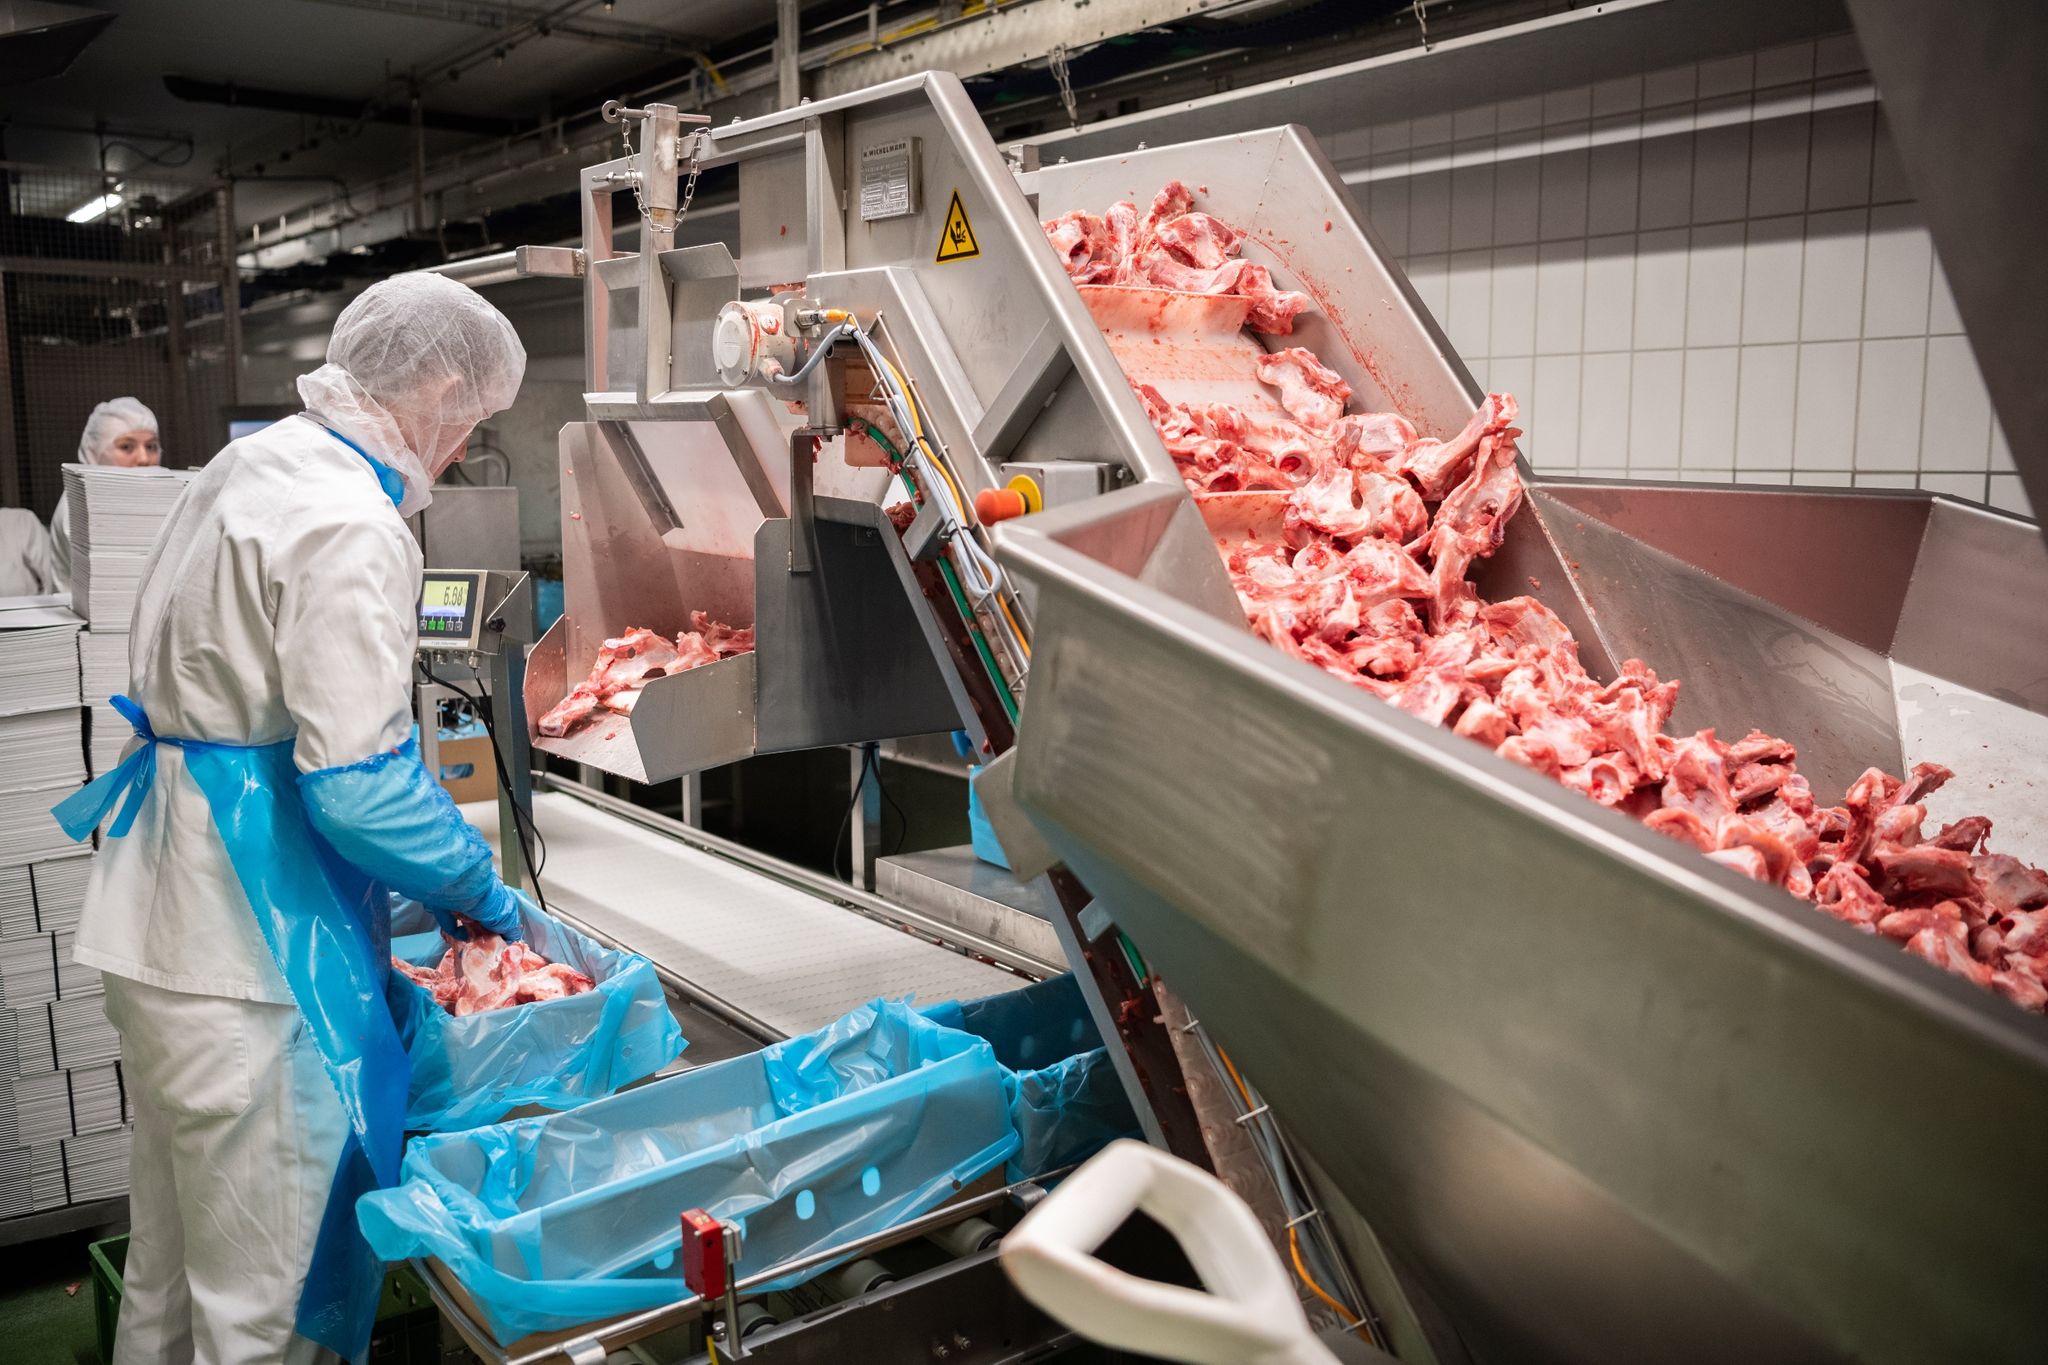 Ab 2021 darf in der Fleischindustrie nicht mehr mit Leiharbeit oder Werksverträgen gearbeitet werden. Foto: Mohssen Assanimoghaddam / dpa